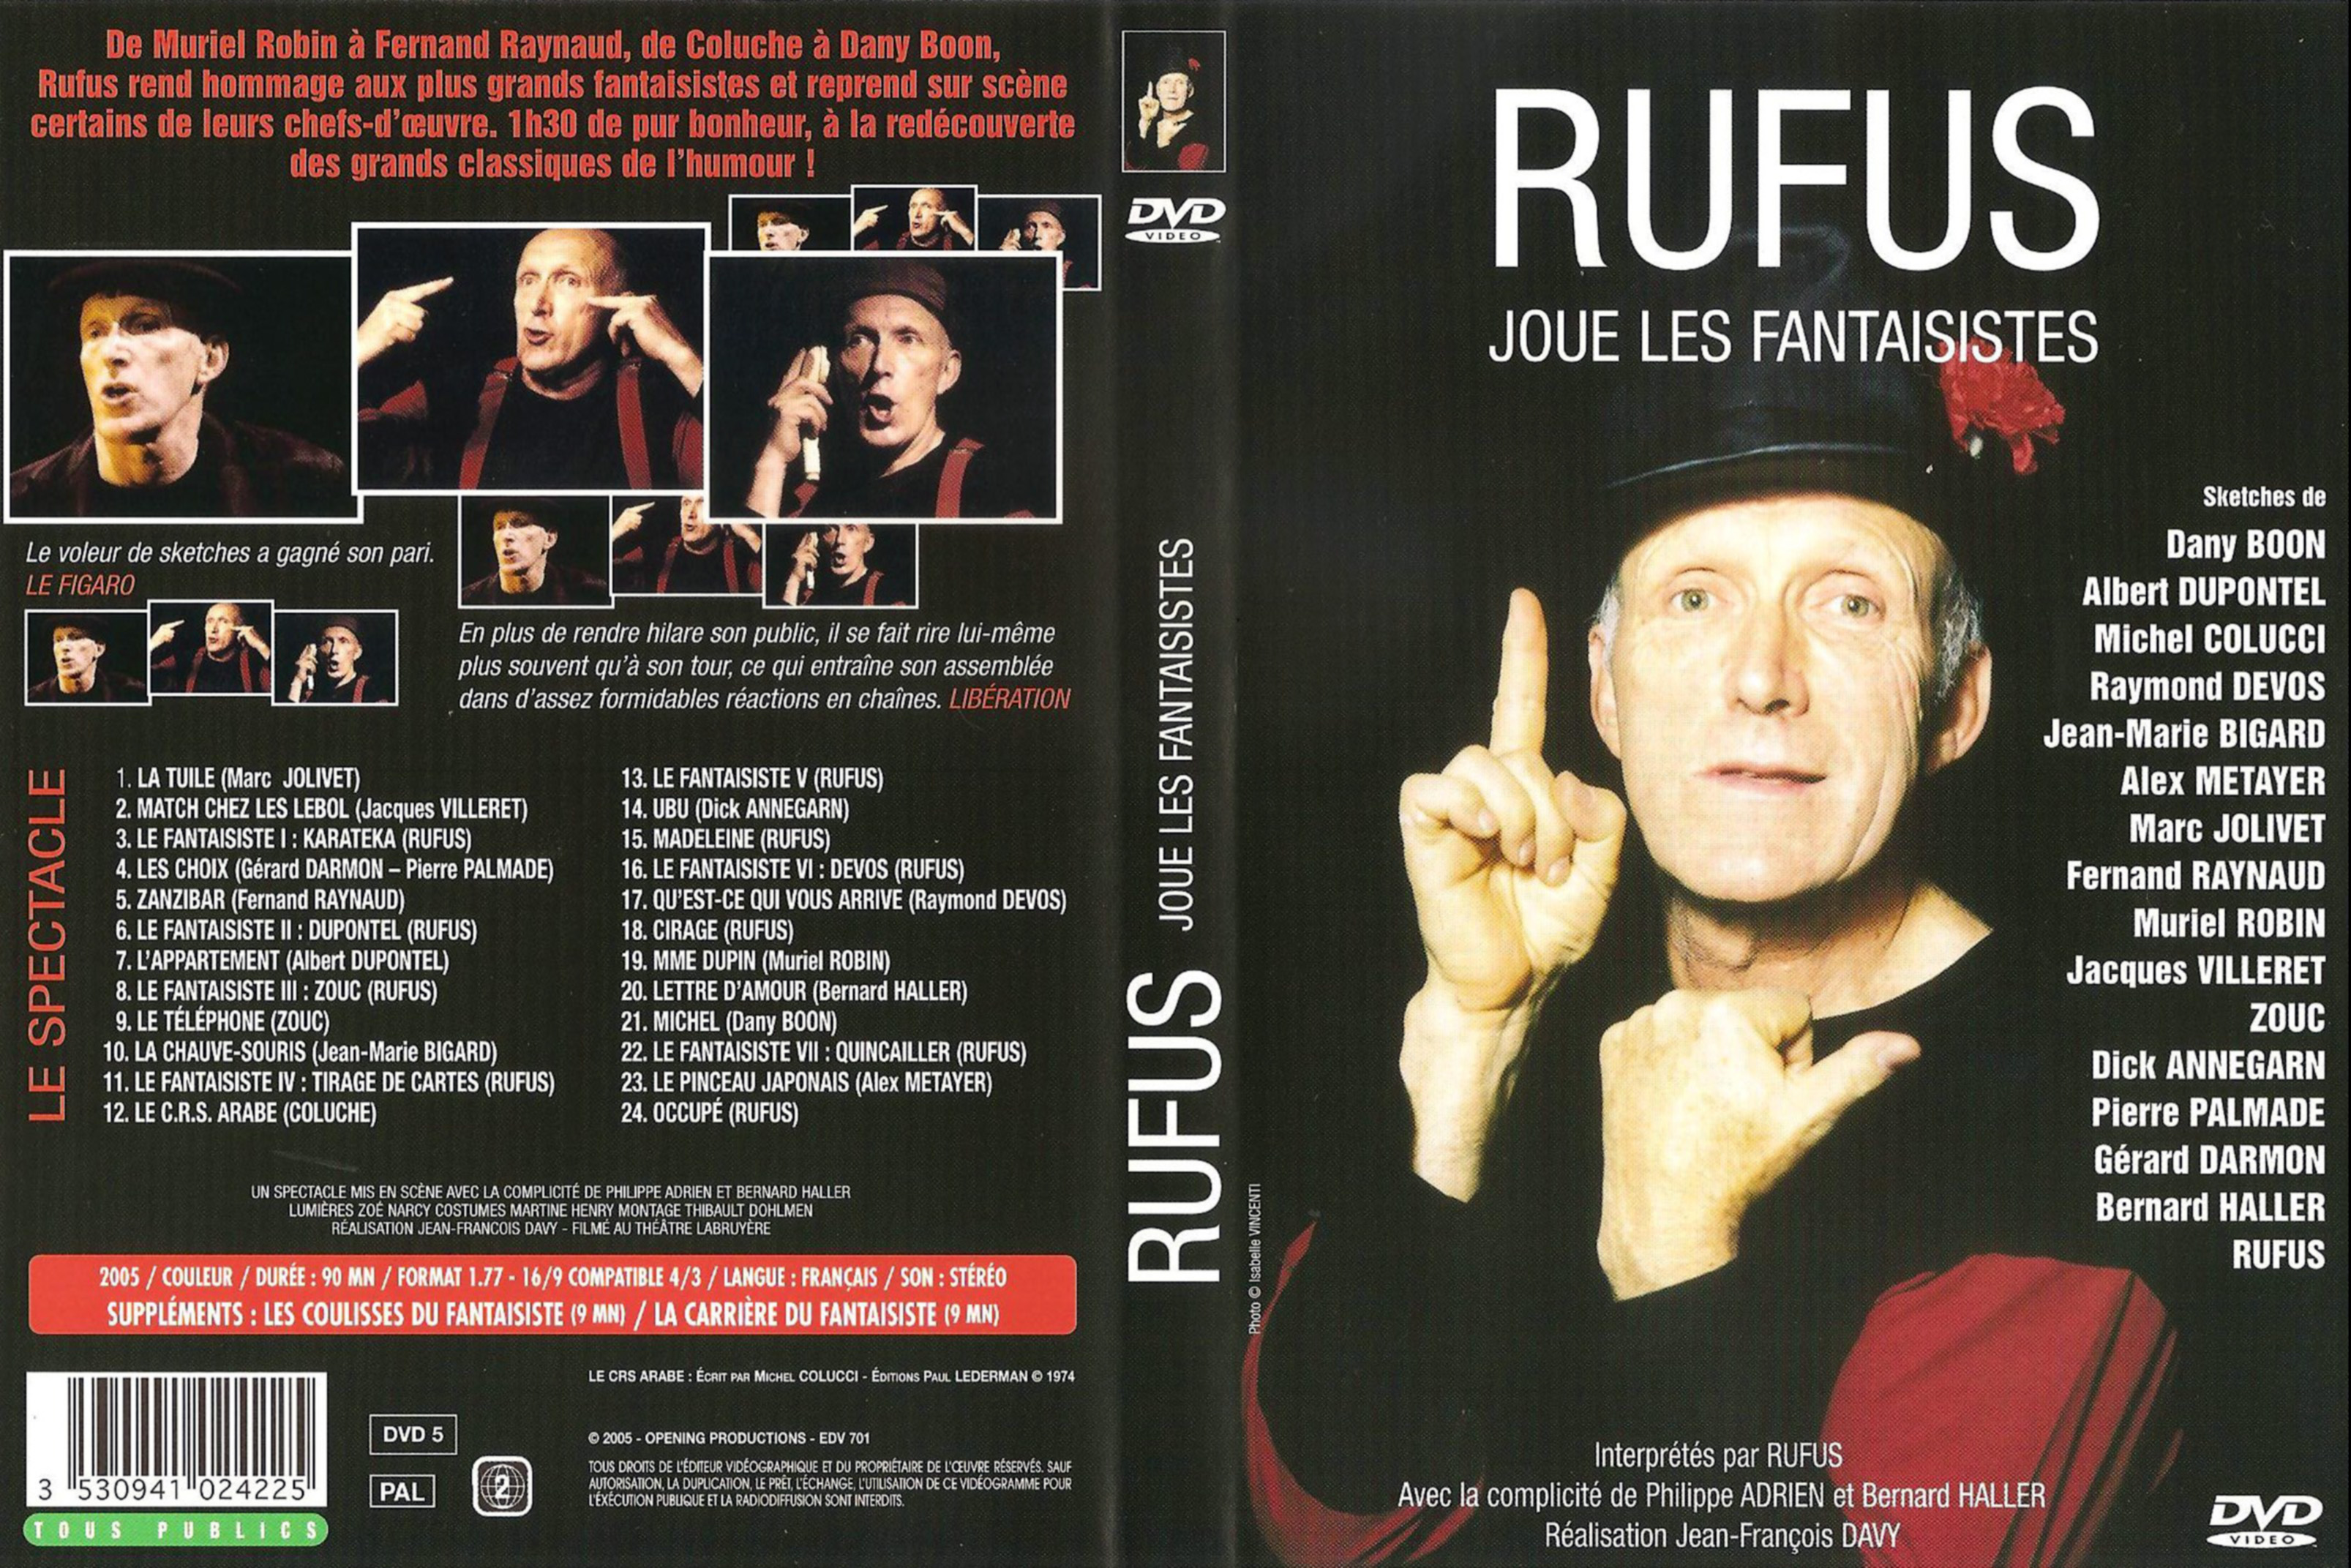 Jaquette DVD Rufus joue les fantaisistes